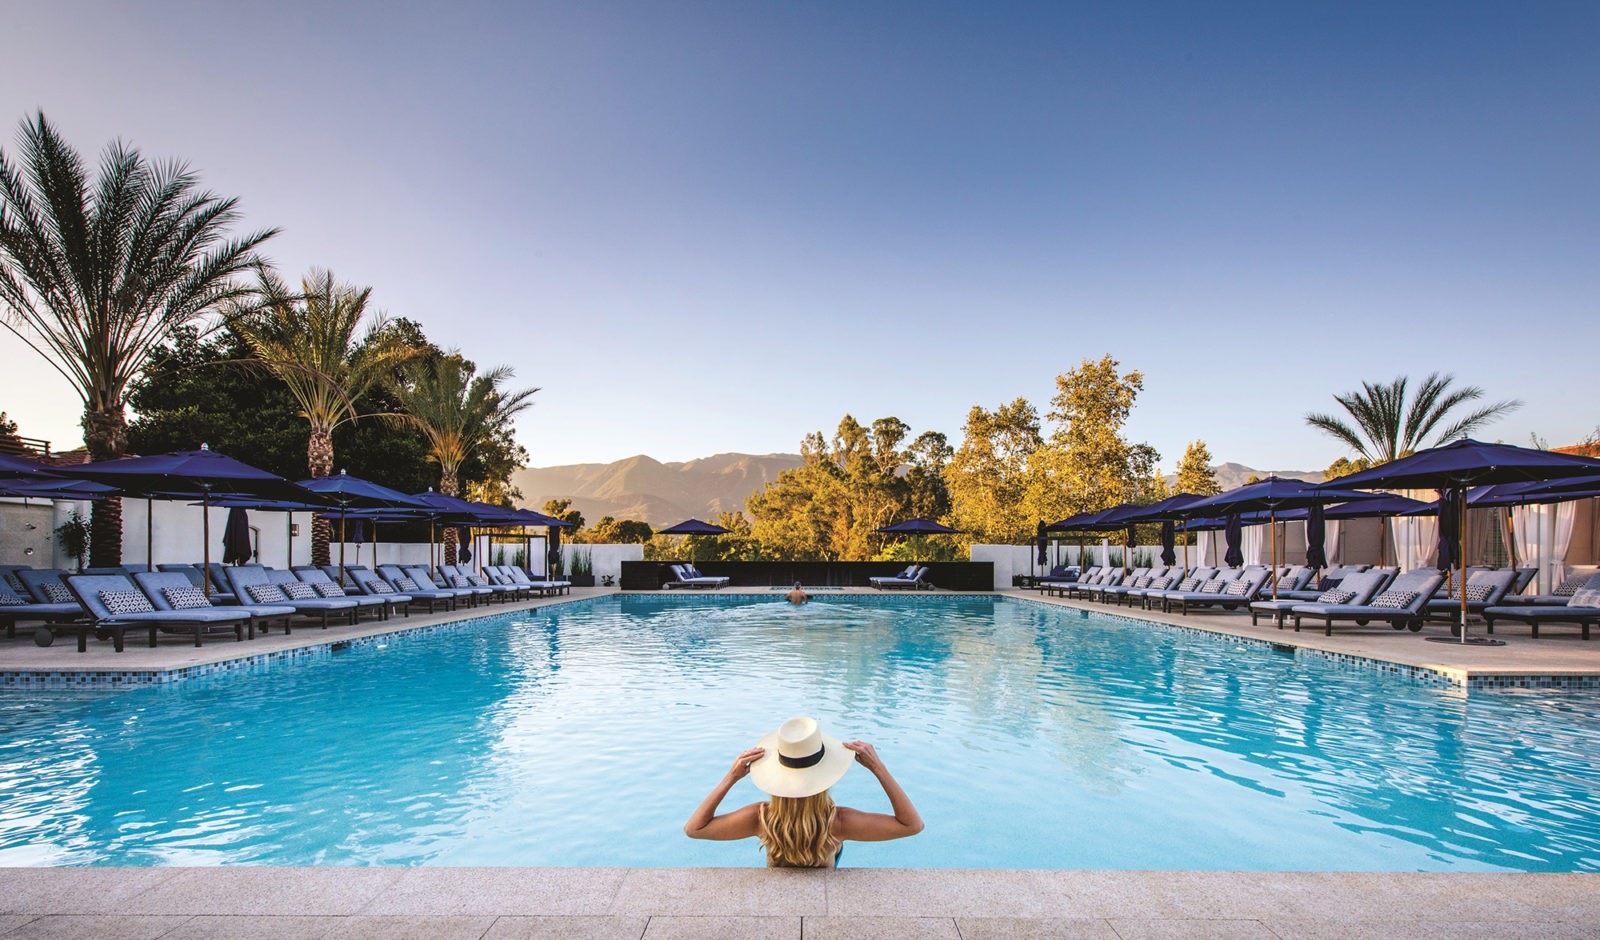 Best Weekend Getaways near Los Angeles - Ojai Valley Inn